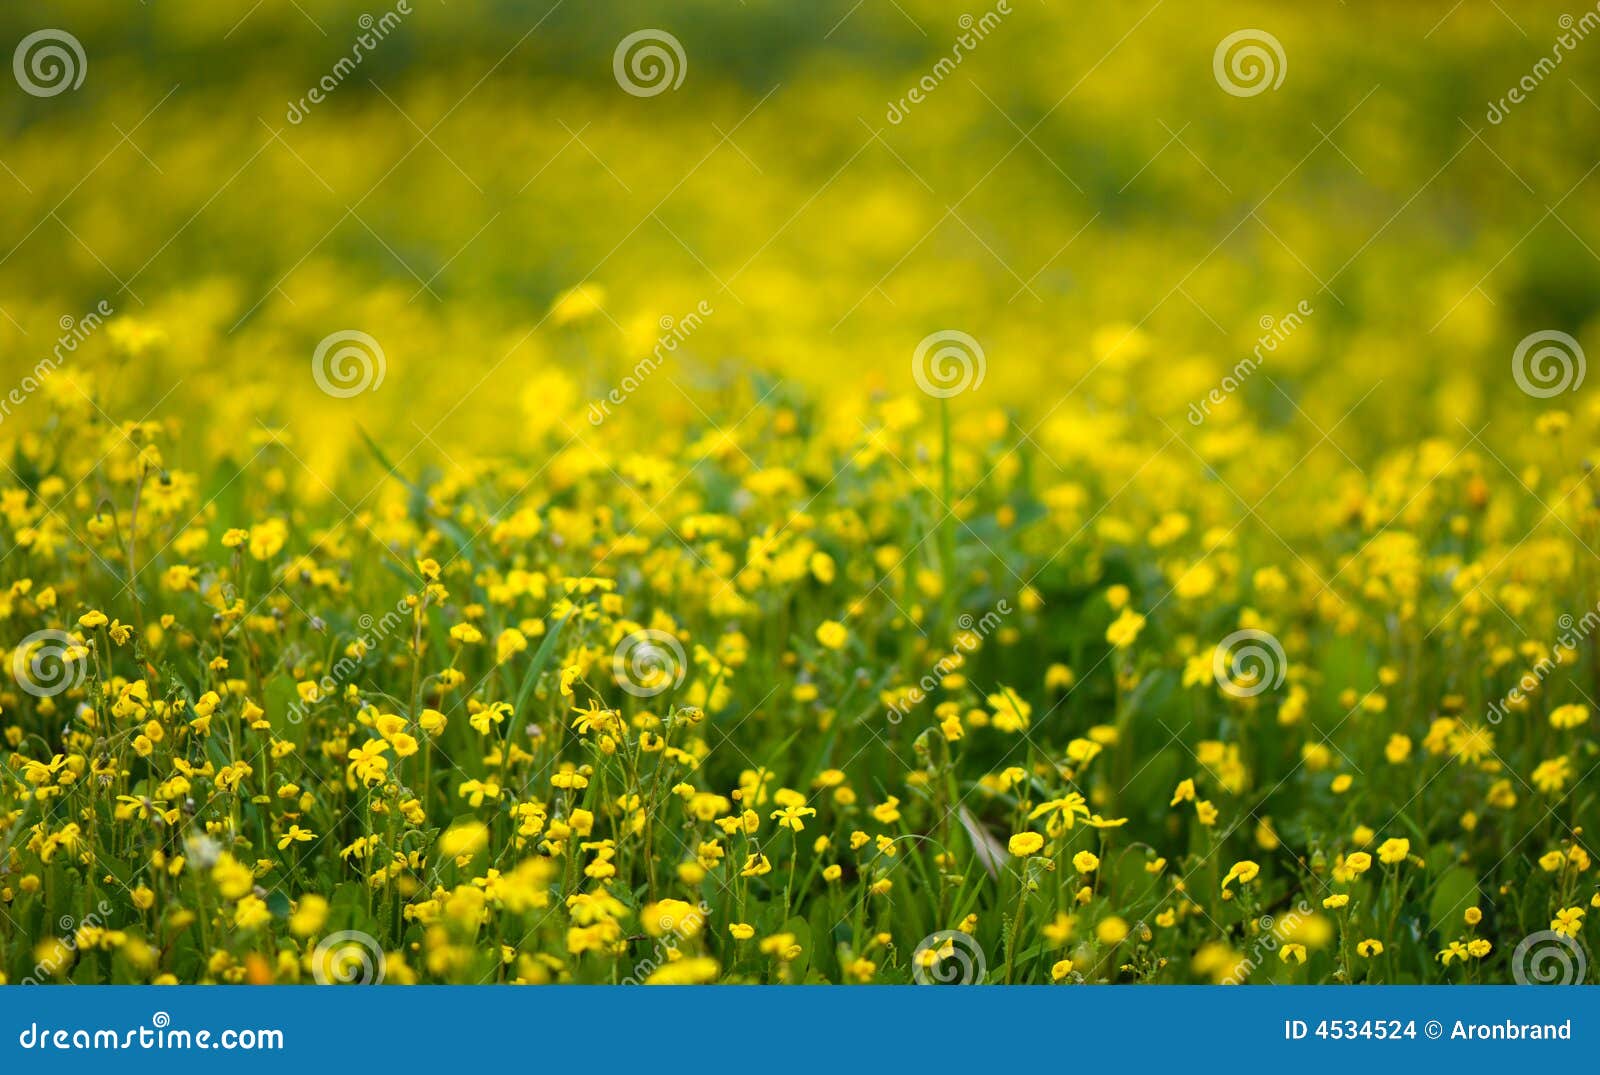 λουλούδι ανασκόπησης κί&. όπως η ανασκόπηση είναι μπορεί ρηχή άνοιξη λουλουδιών πεδίων βάθους αποτελεσματική χρησιμοποιούμενη κίτρινη